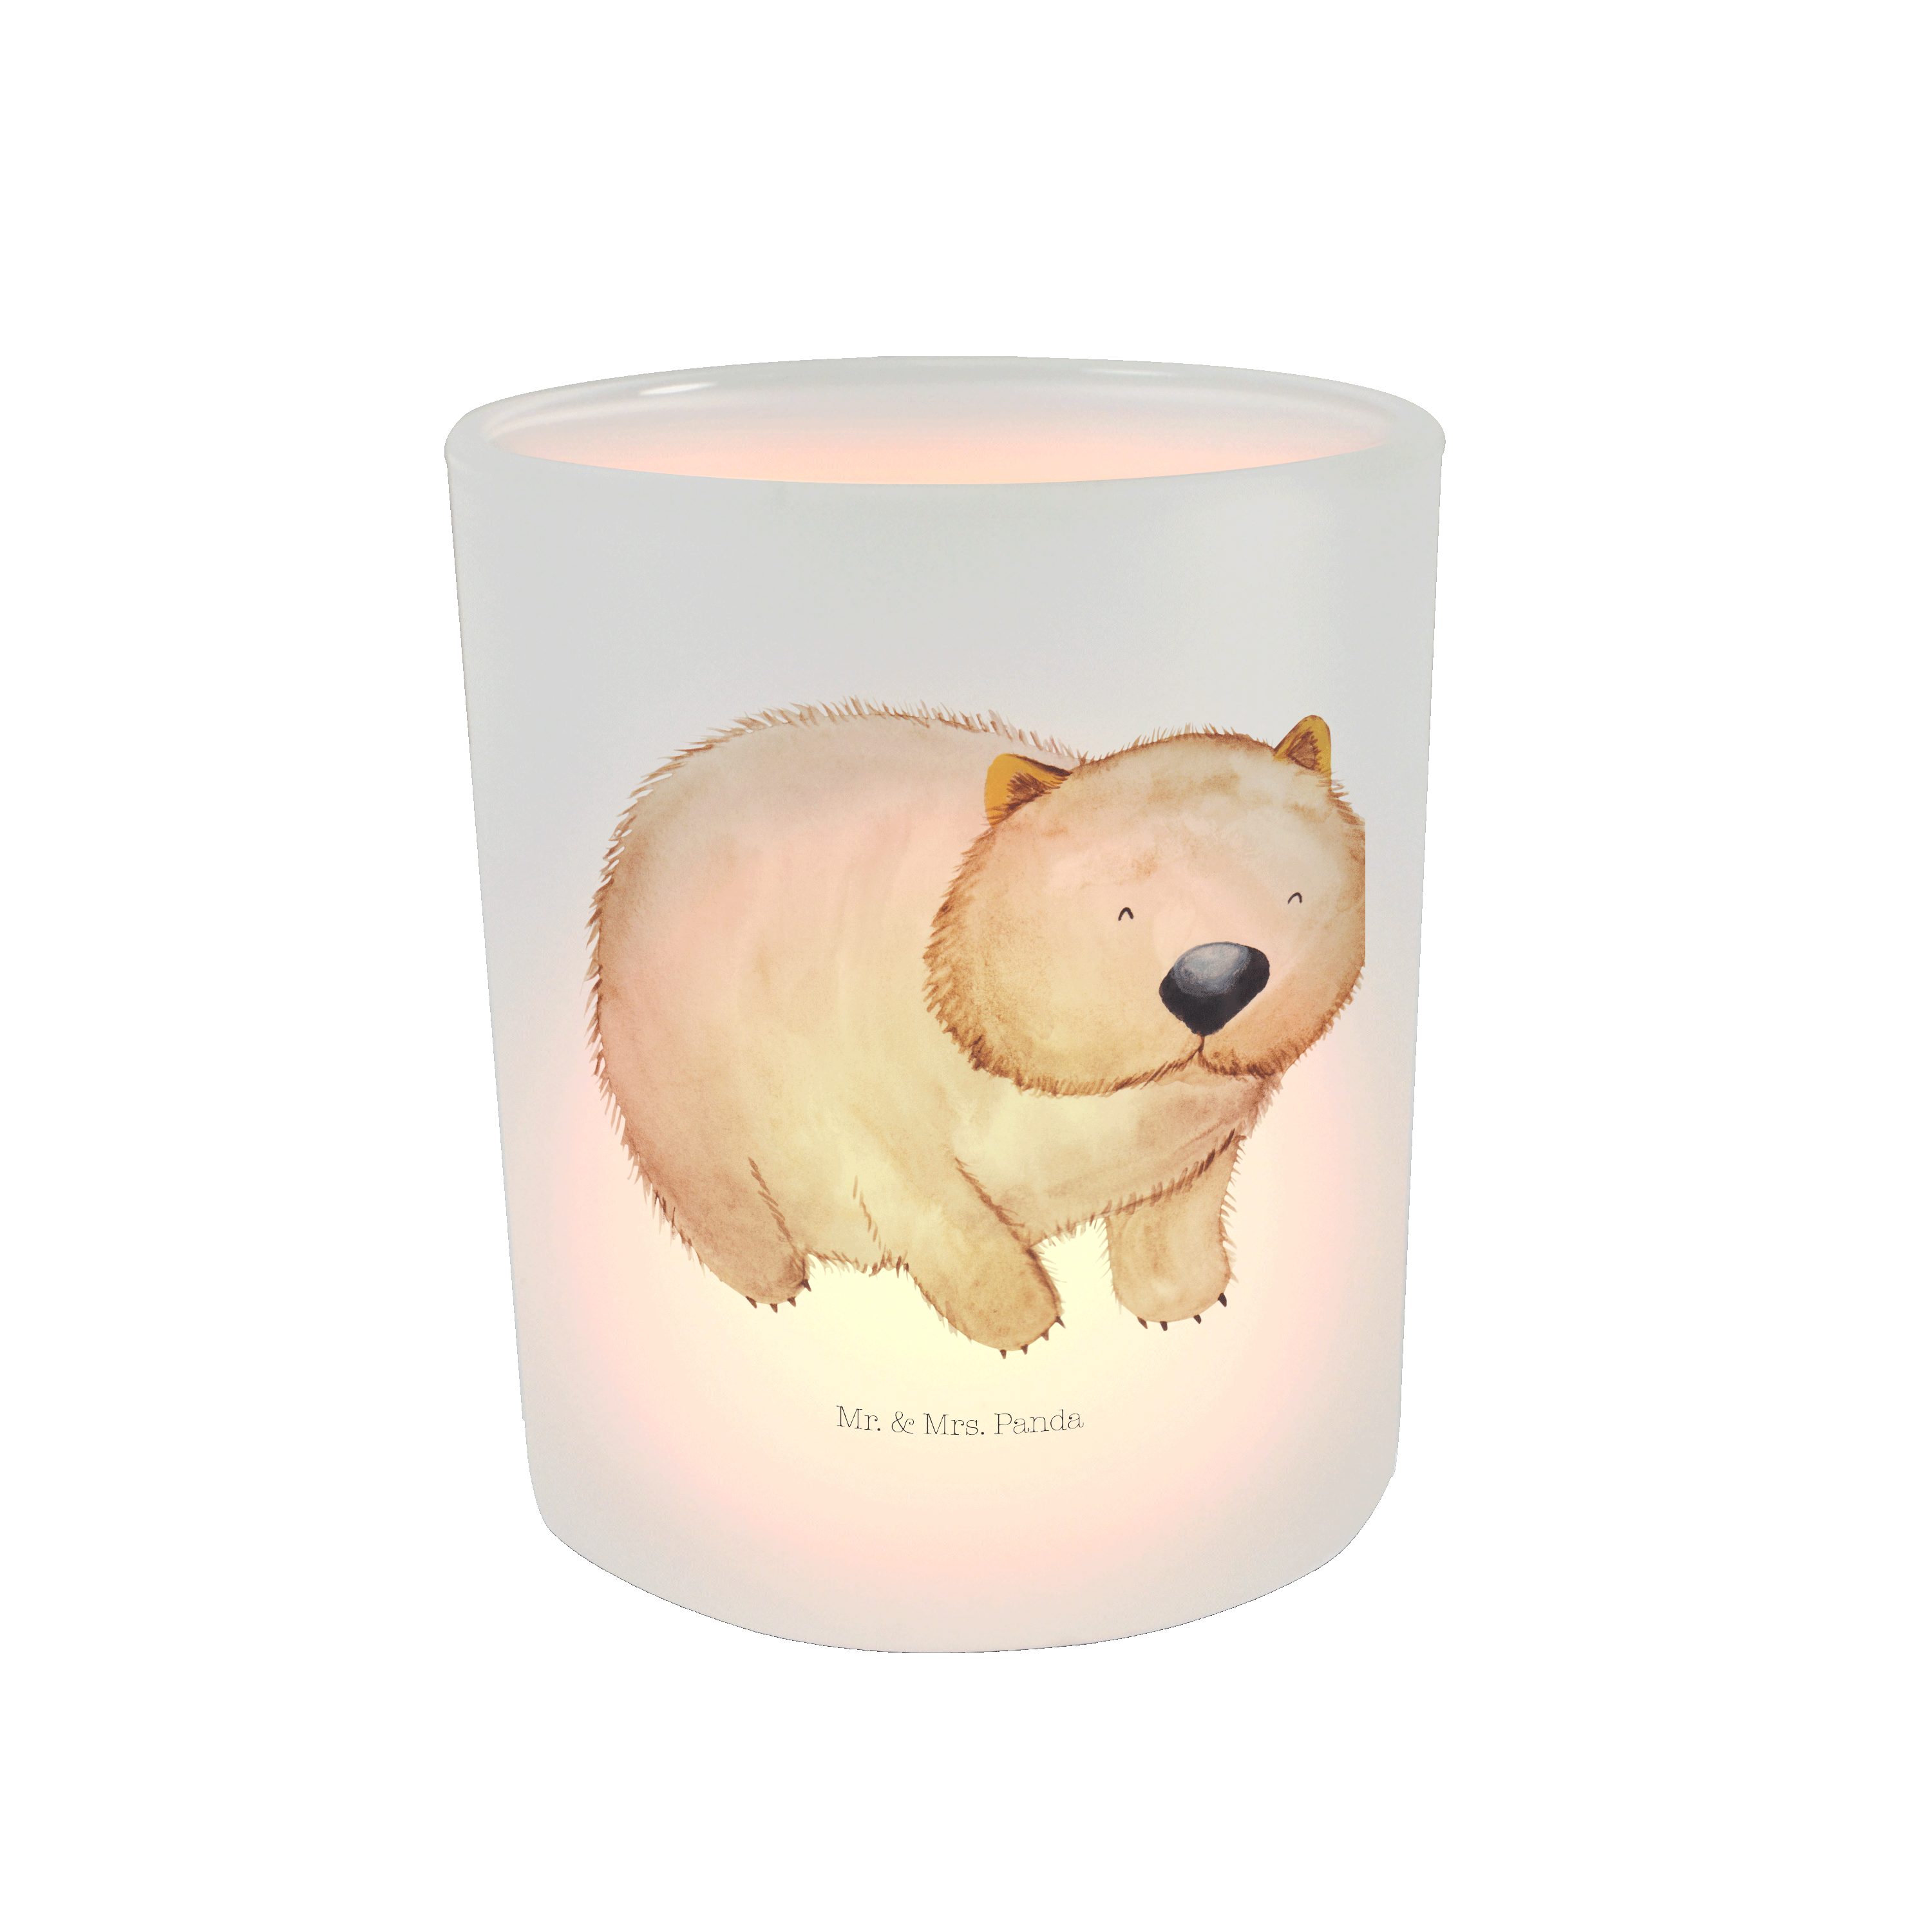 Mr. & Mrs. Panda Windlicht Wombat - Transparent - Geschenk, Teelichtglas, Gute Laune, Kerzenglas (1 St)